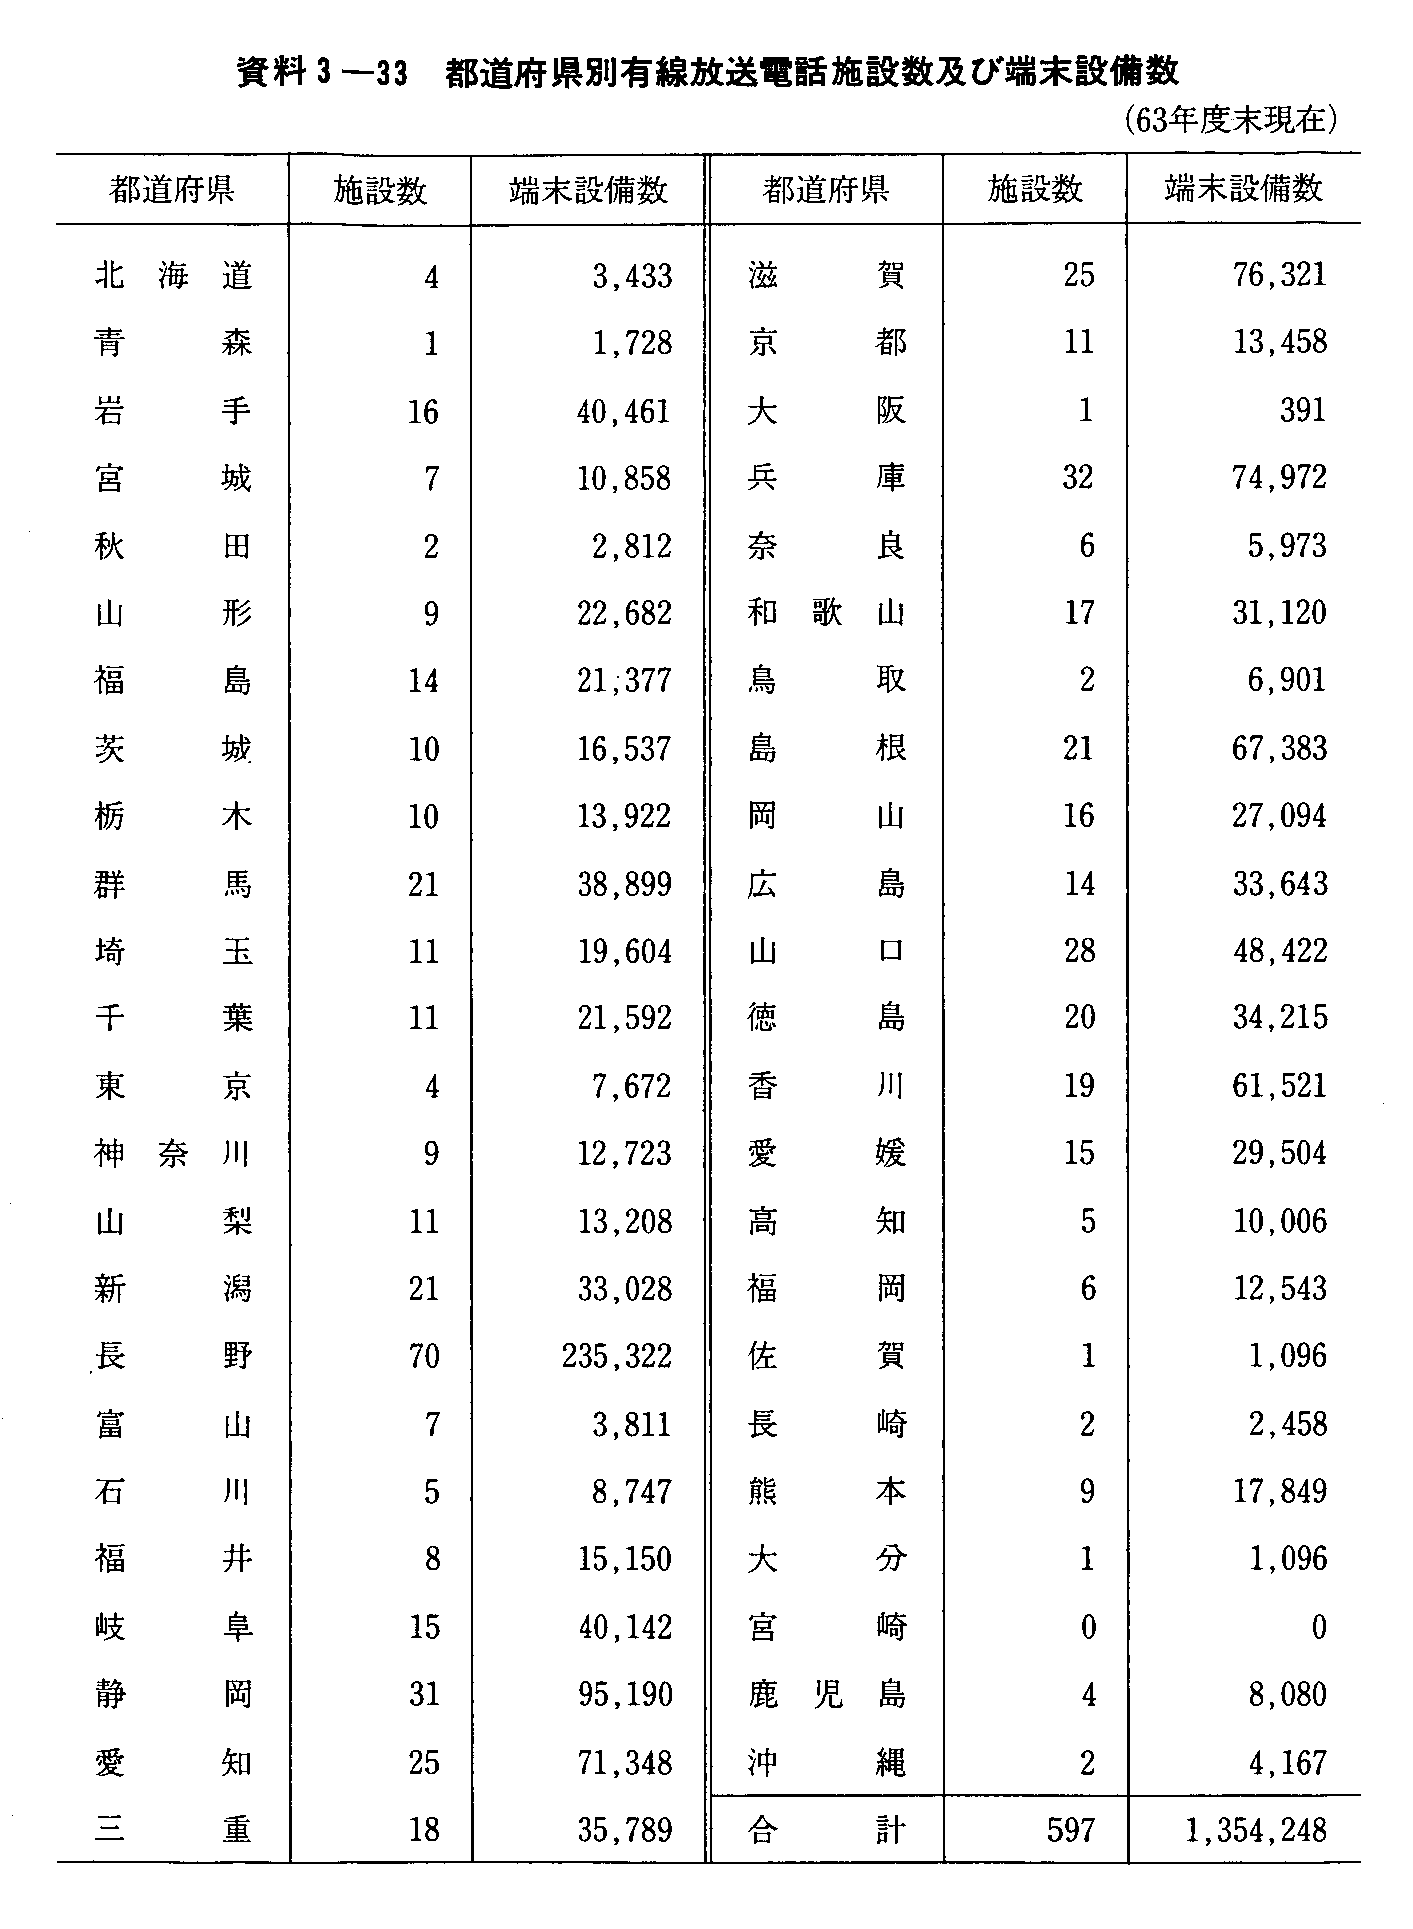 3-33 s{ʗLdb{݋yђ[ݔ(63Nx)